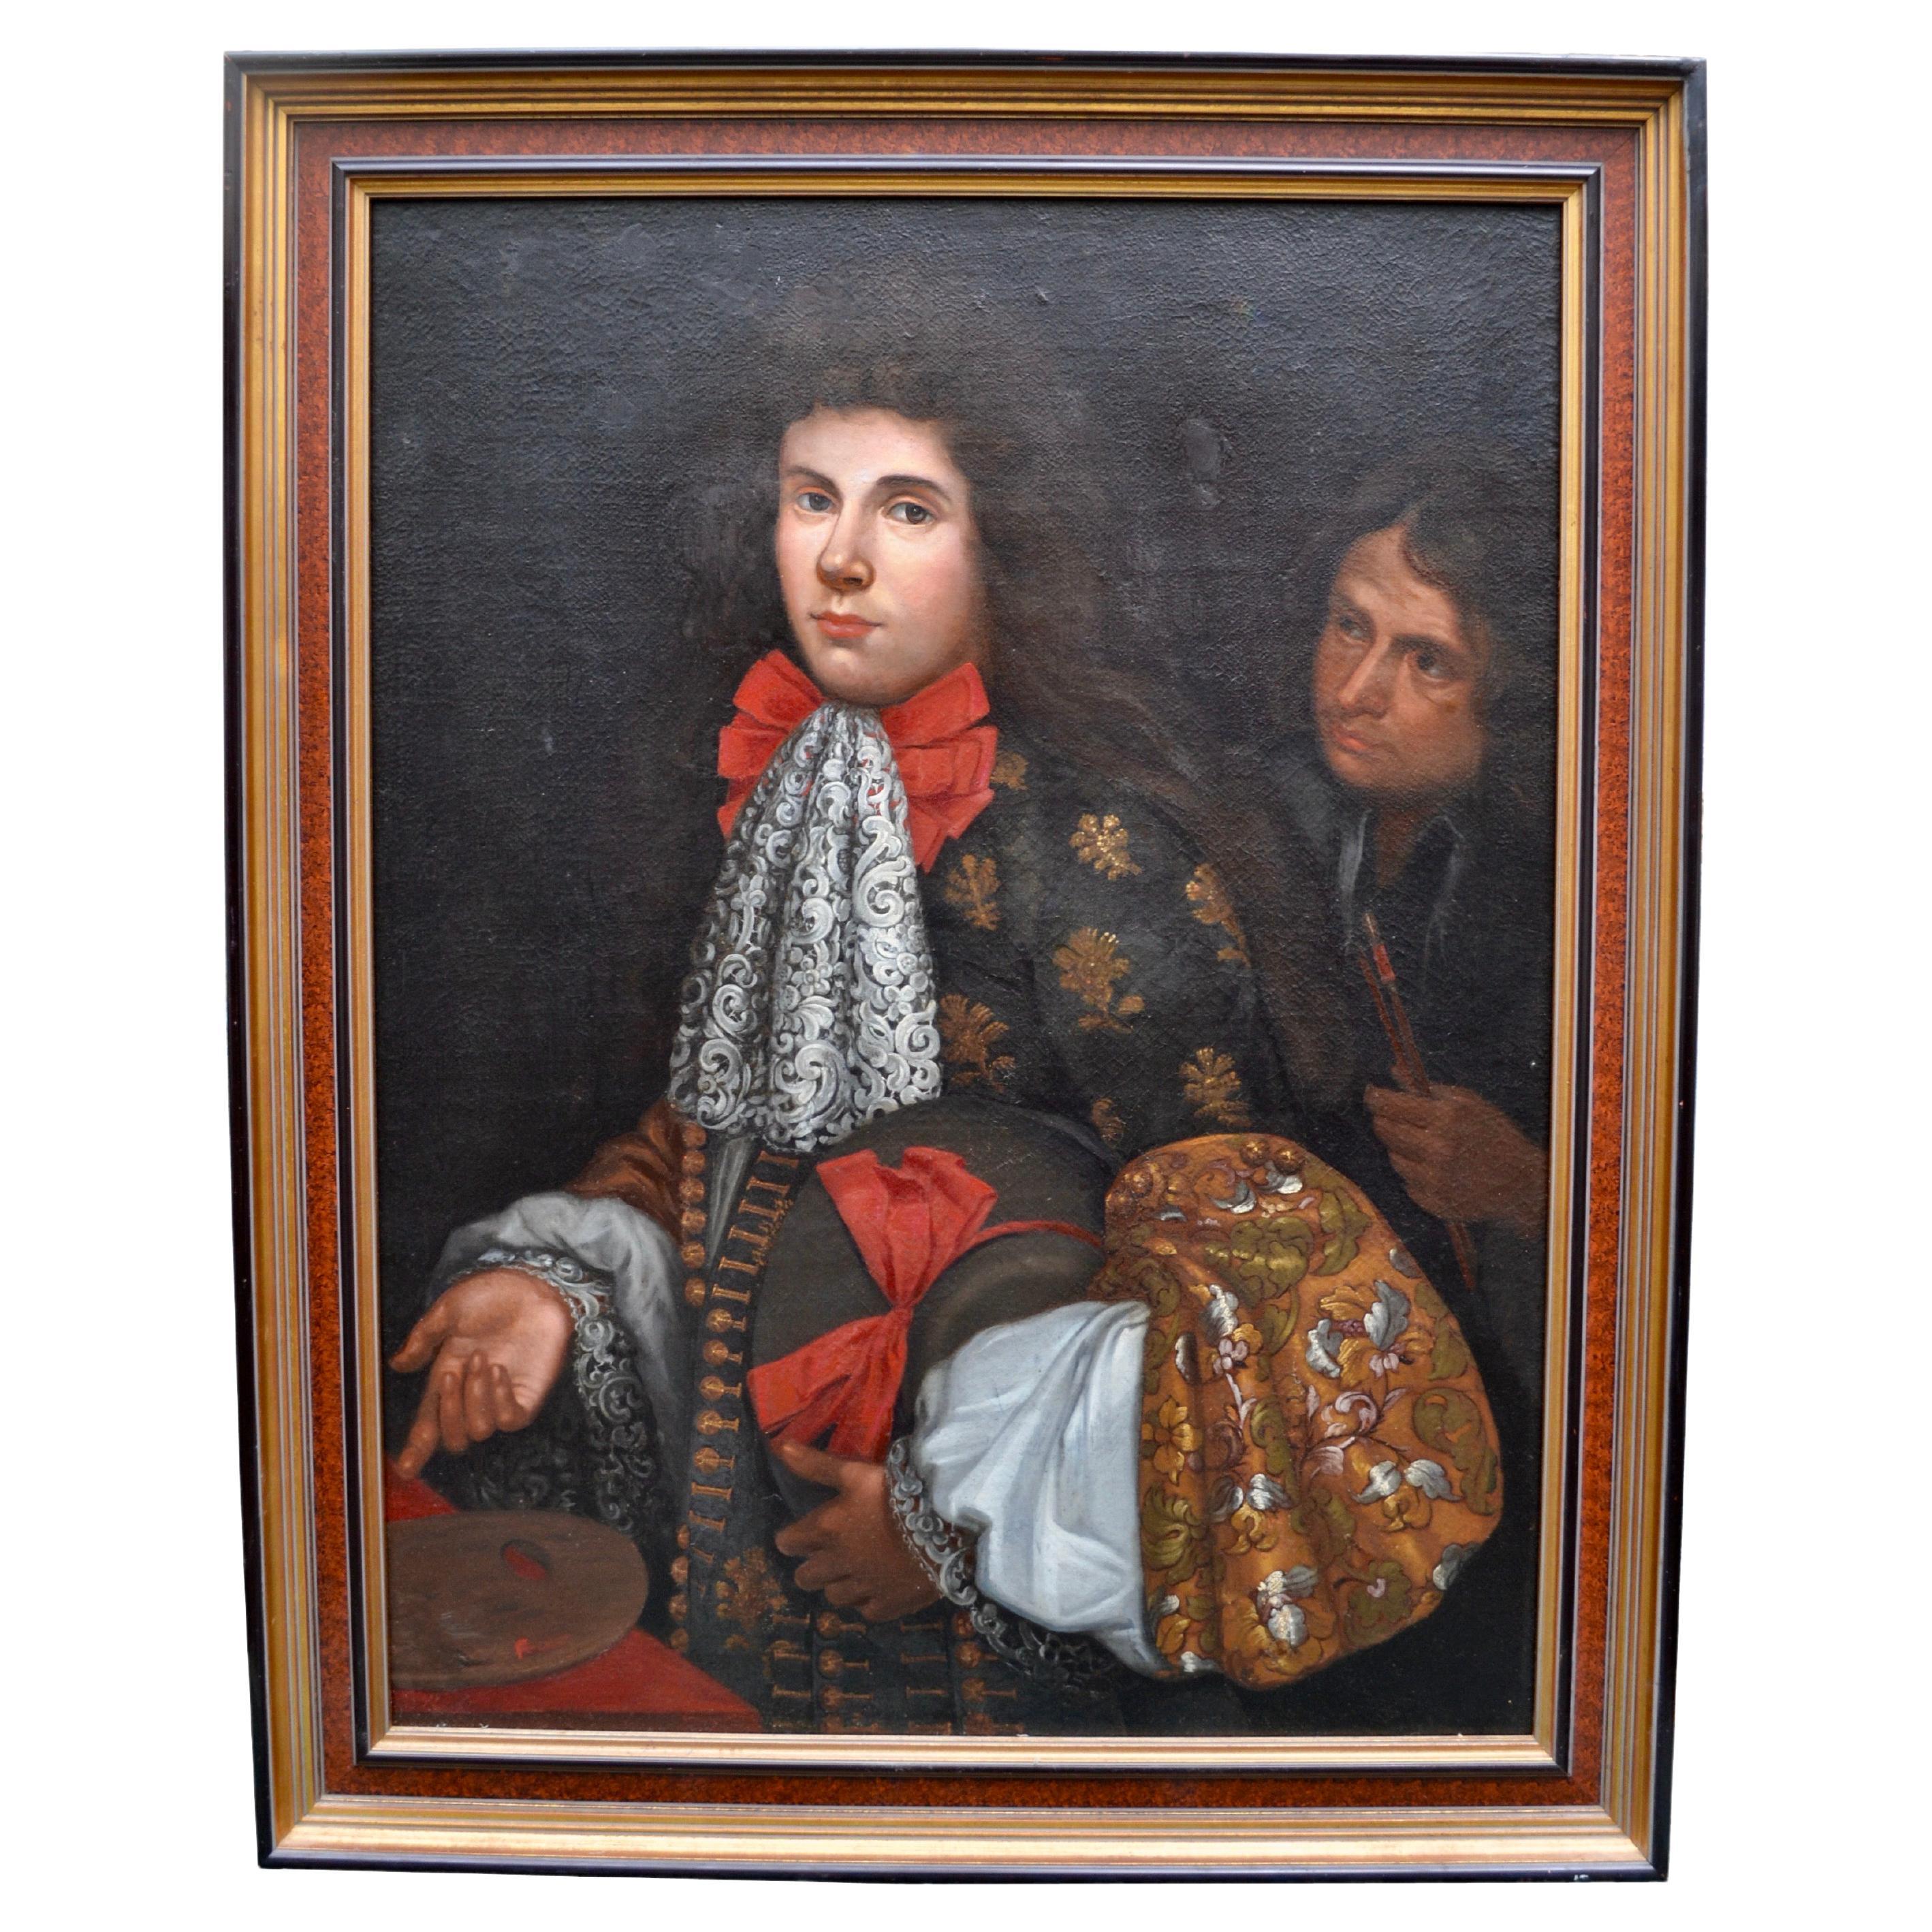 Englisches Porträt eines aristokratischen Gentleman aus dem 19. Jahrhundert in der Art von Rubens